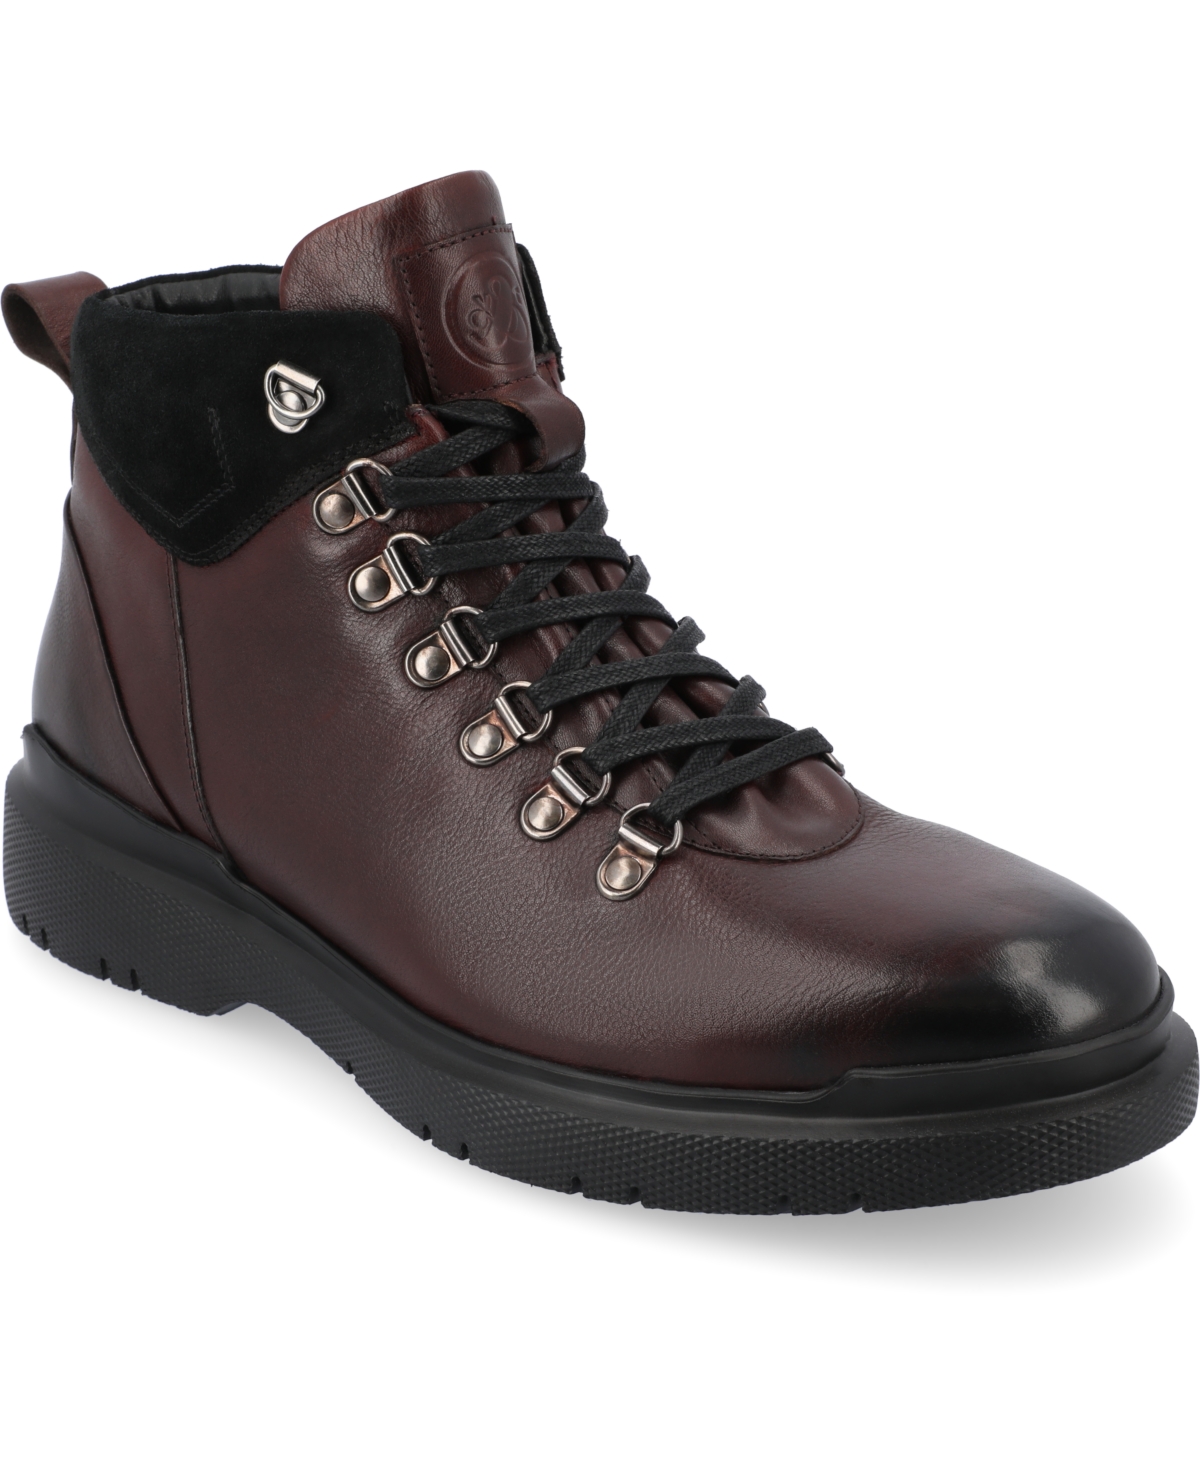 Men's Sherman Water Resistant Tru Comfort Foam Plain Toe Ankle Boots - Black